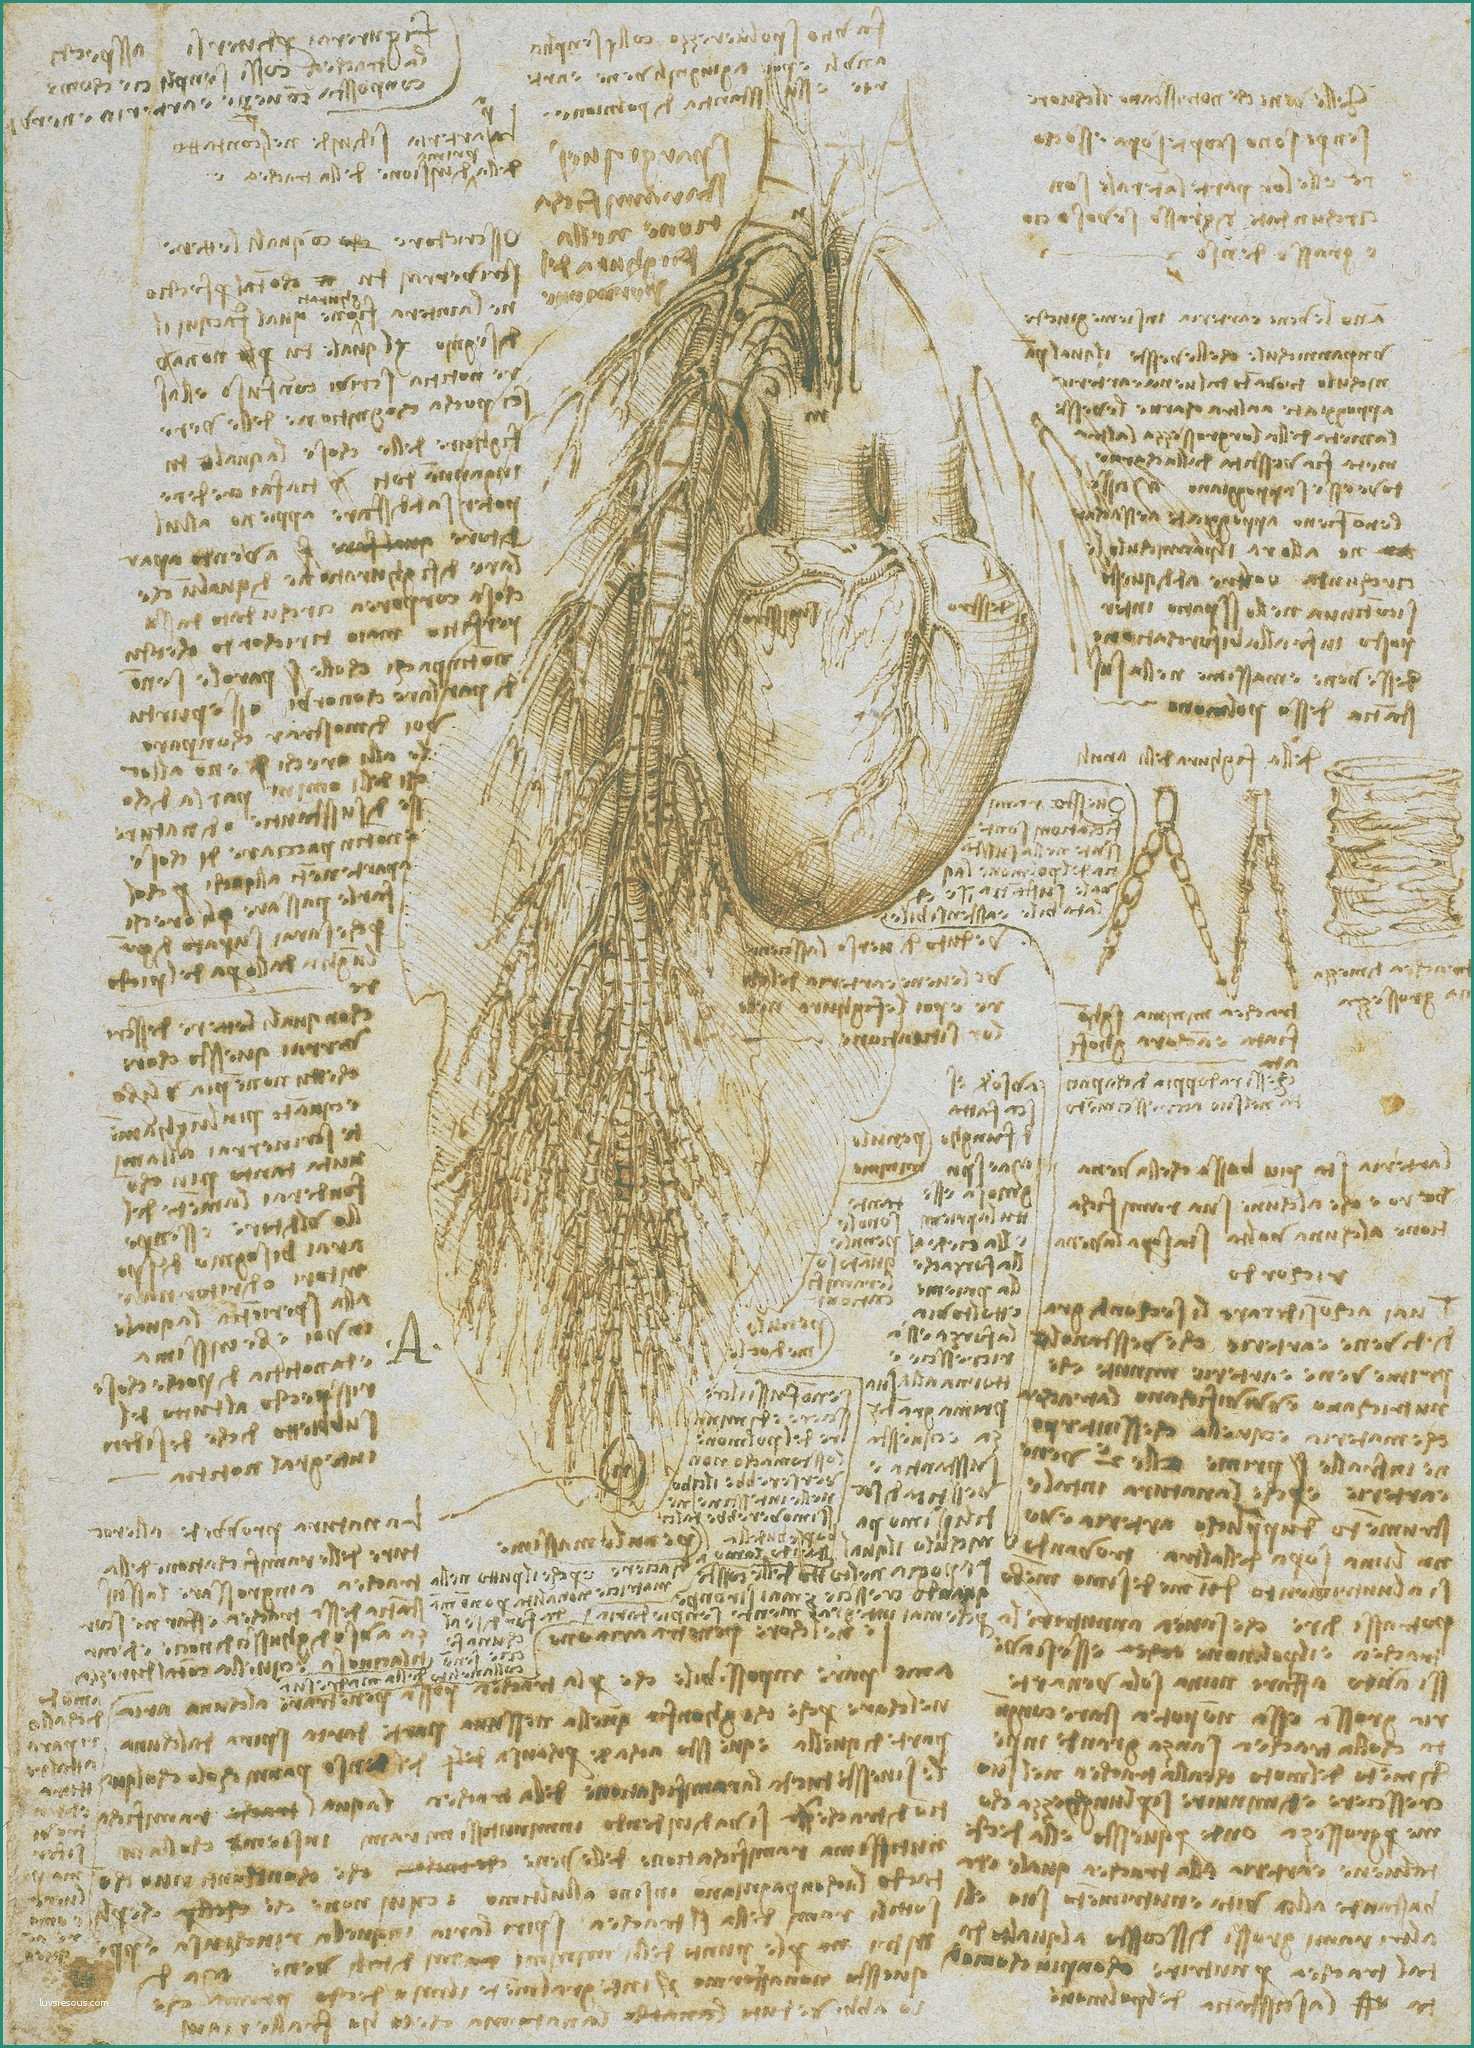 Camille Pissarro Opere E Study Of the Heart and Bronchial Muscles by Leonardo Da Vinci In 14